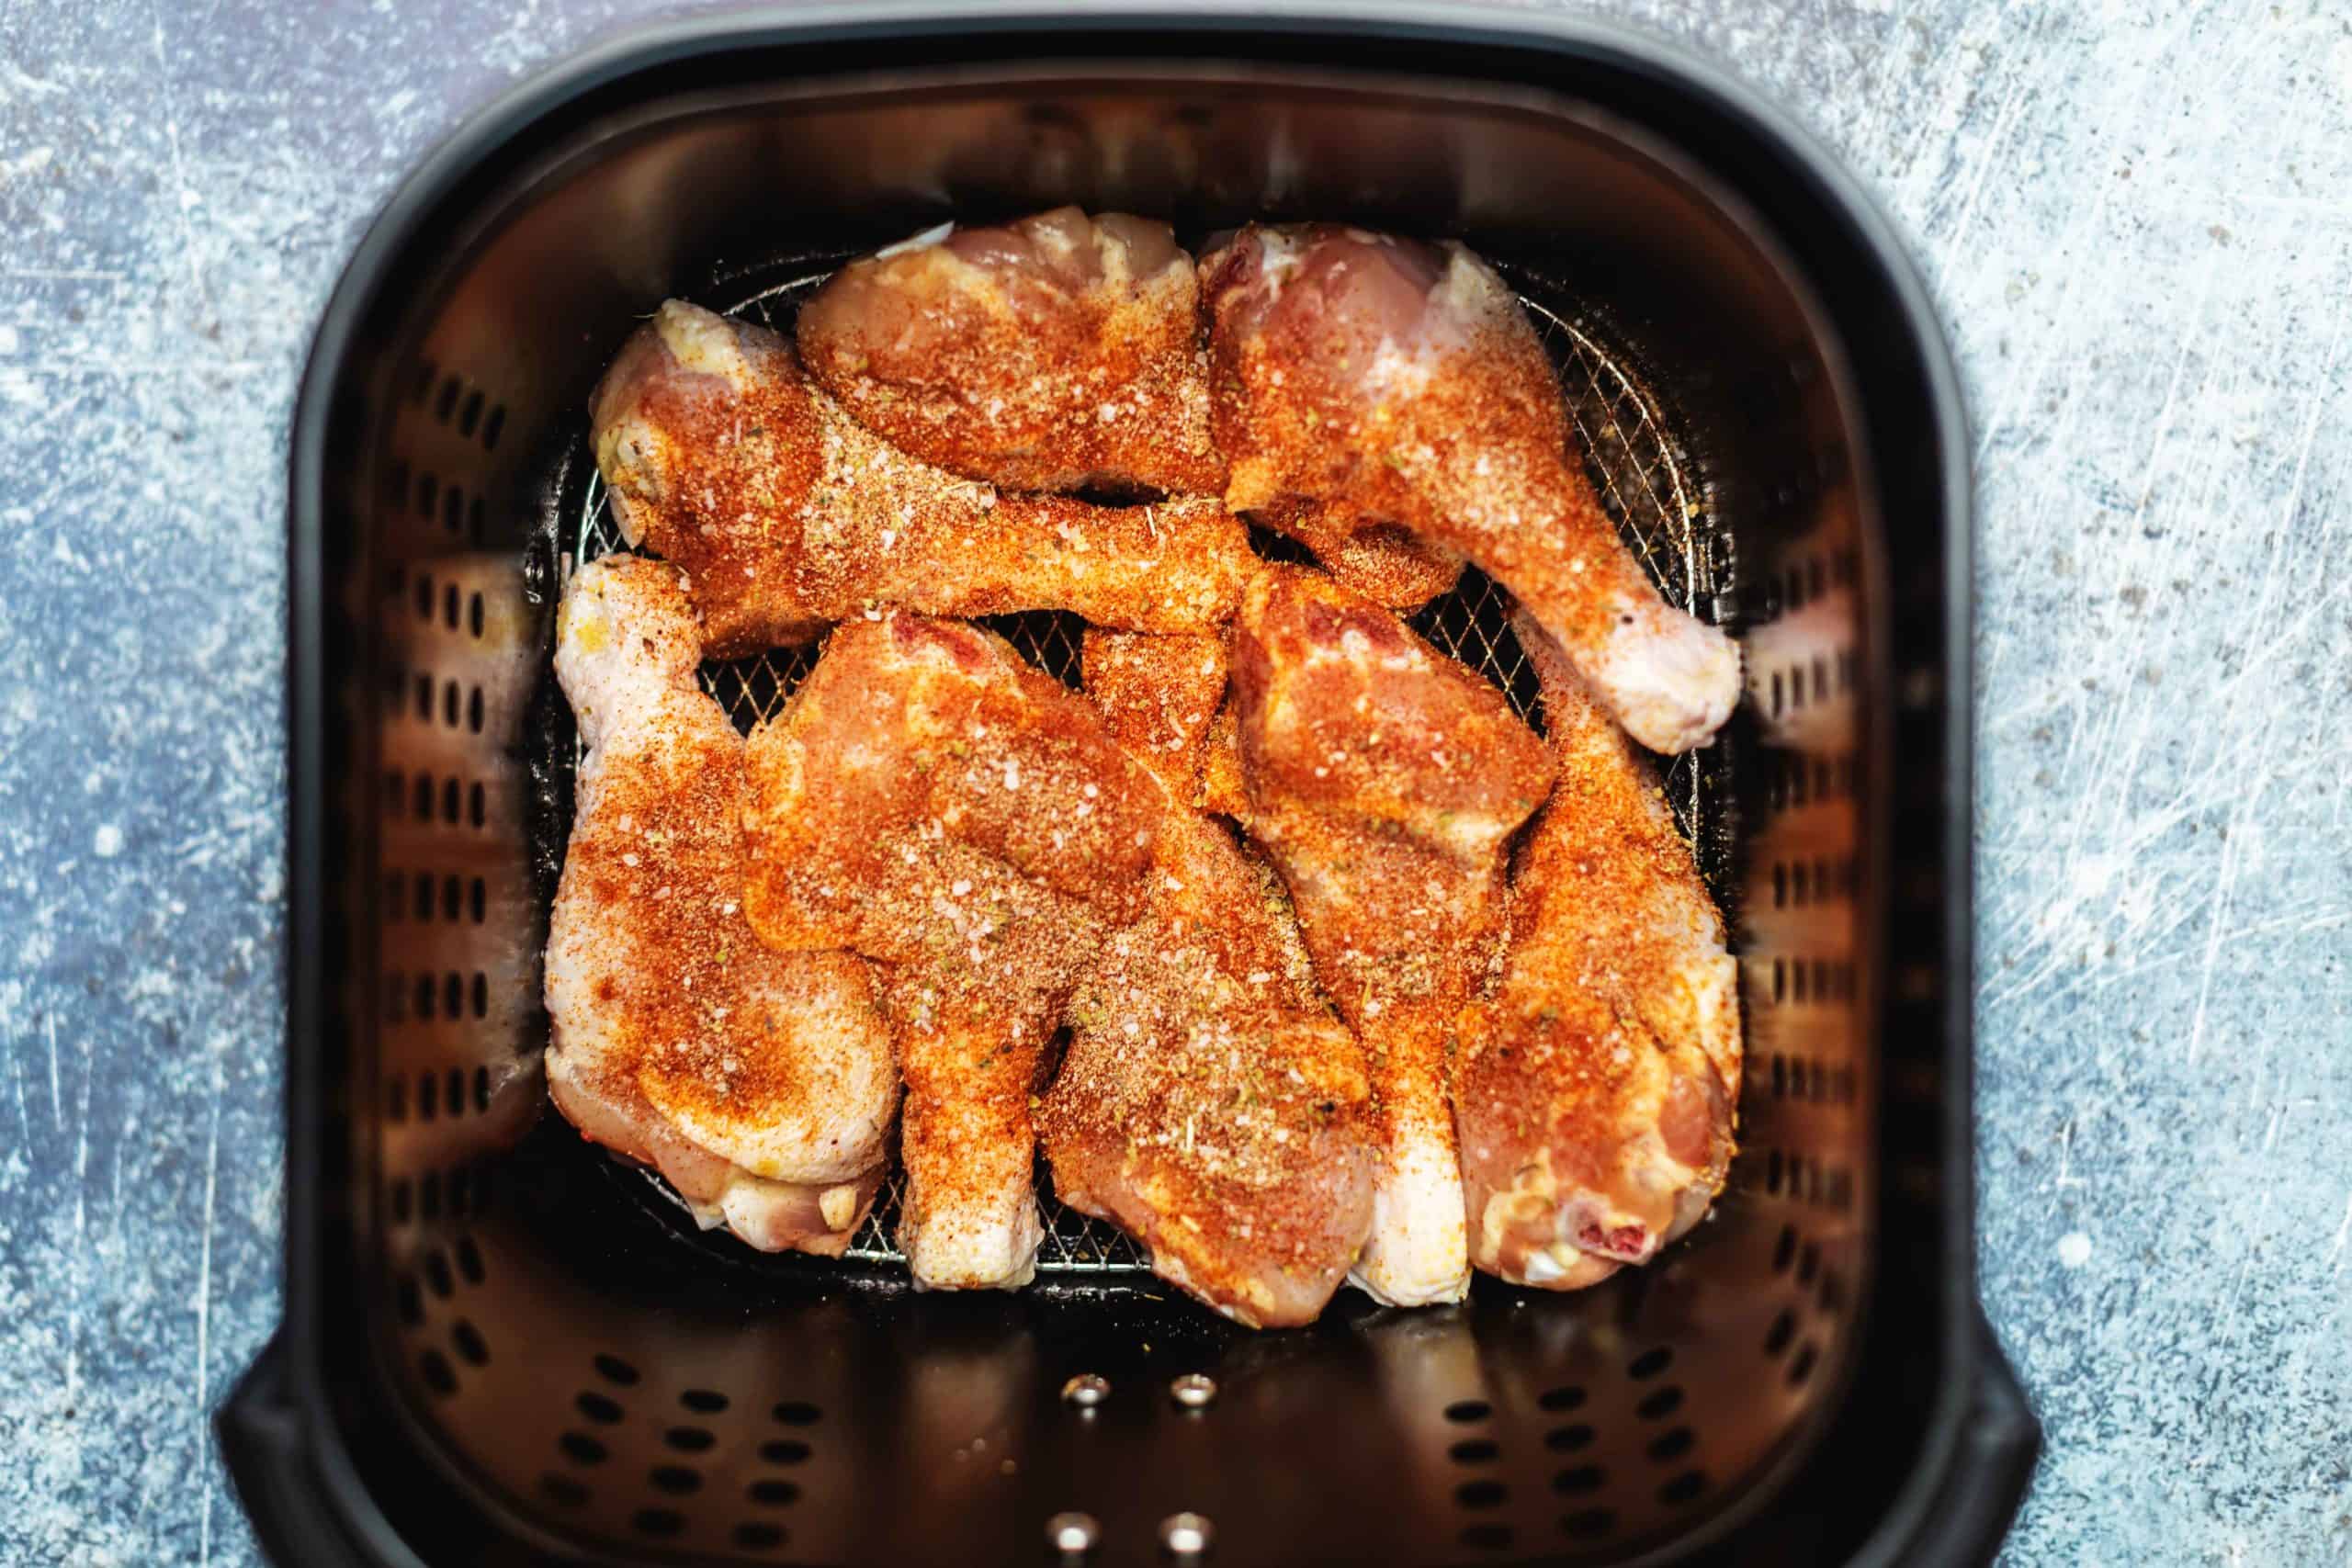 raw chicken legs in the air fryer